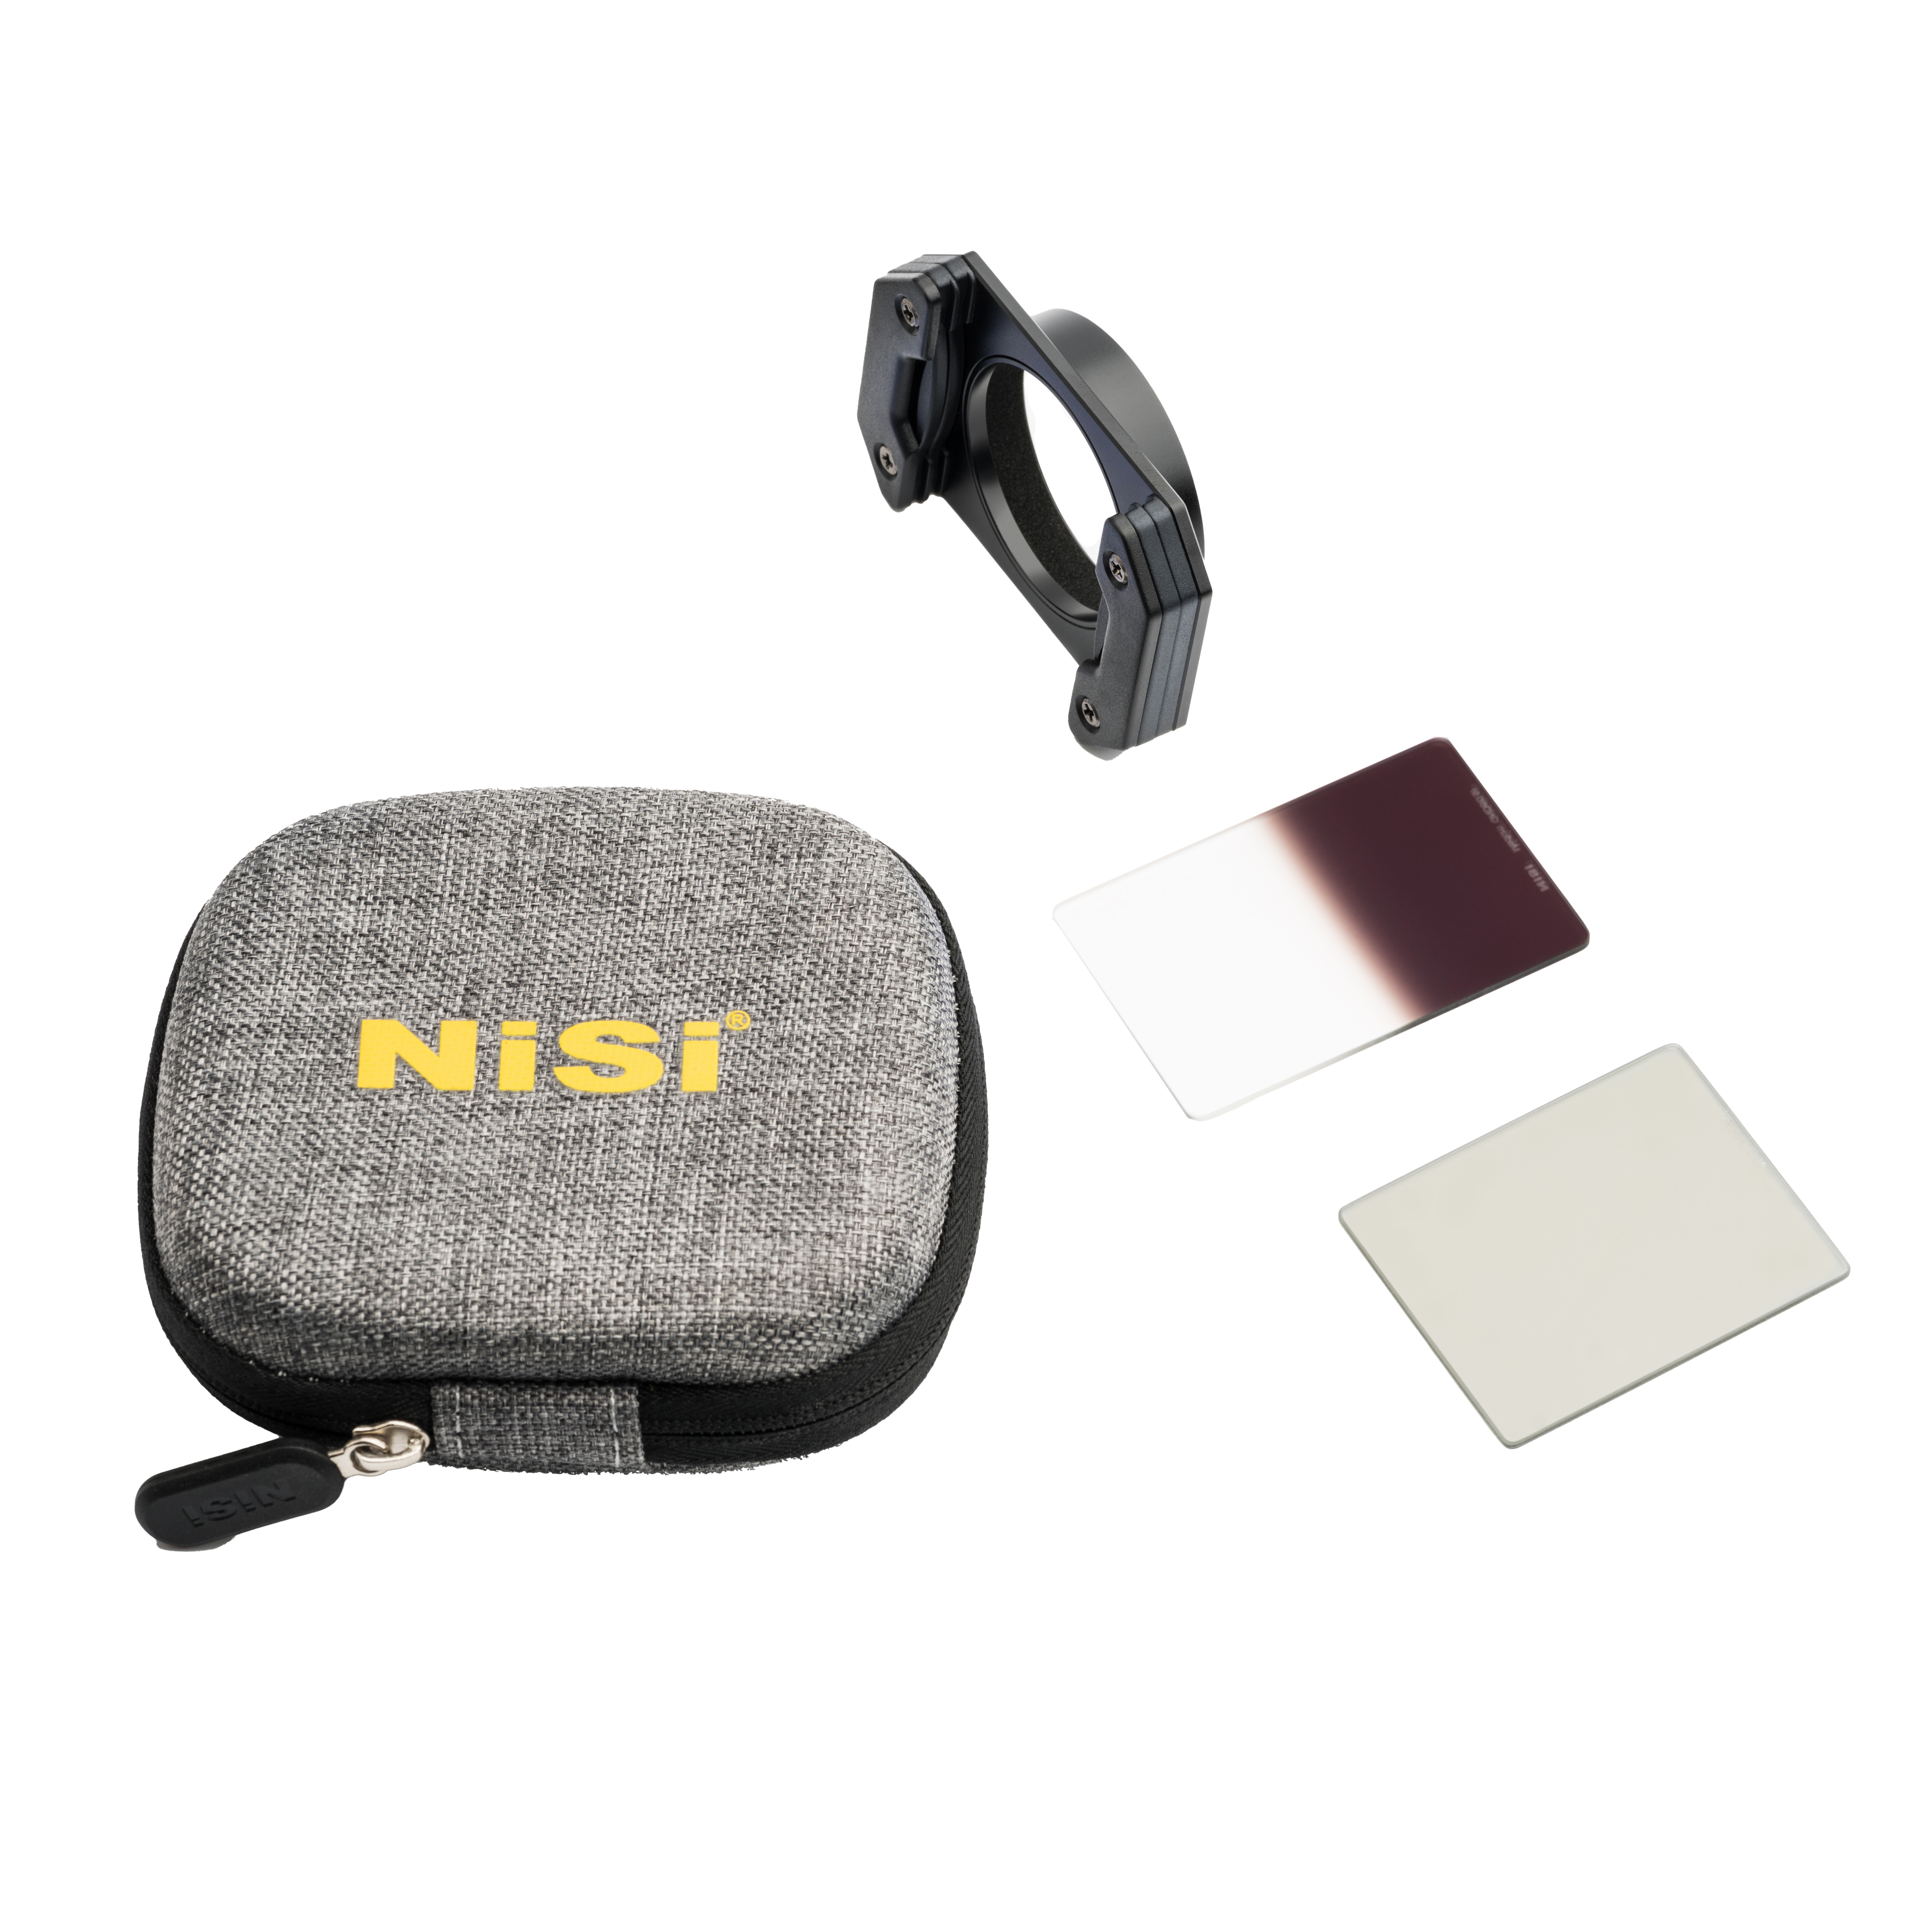 NiSi Kompaktfilter Starter Kit